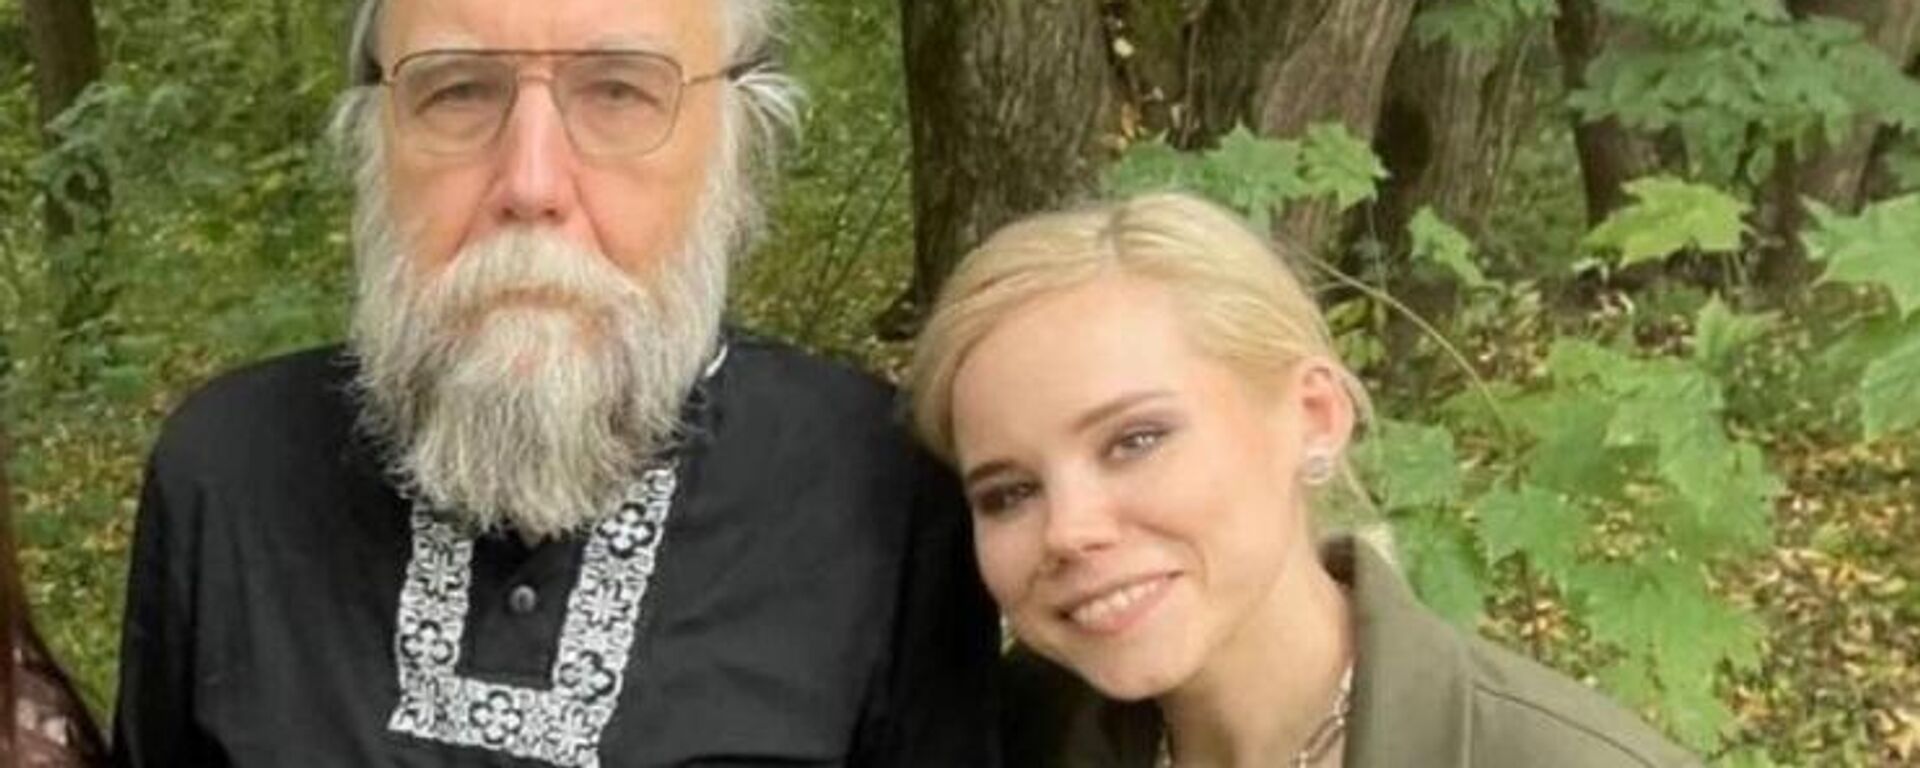 Russian philosopher Alexander Dugin and his late daughter Daria. Photo from social media. - Sputnik International, 1920, 21.08.2022